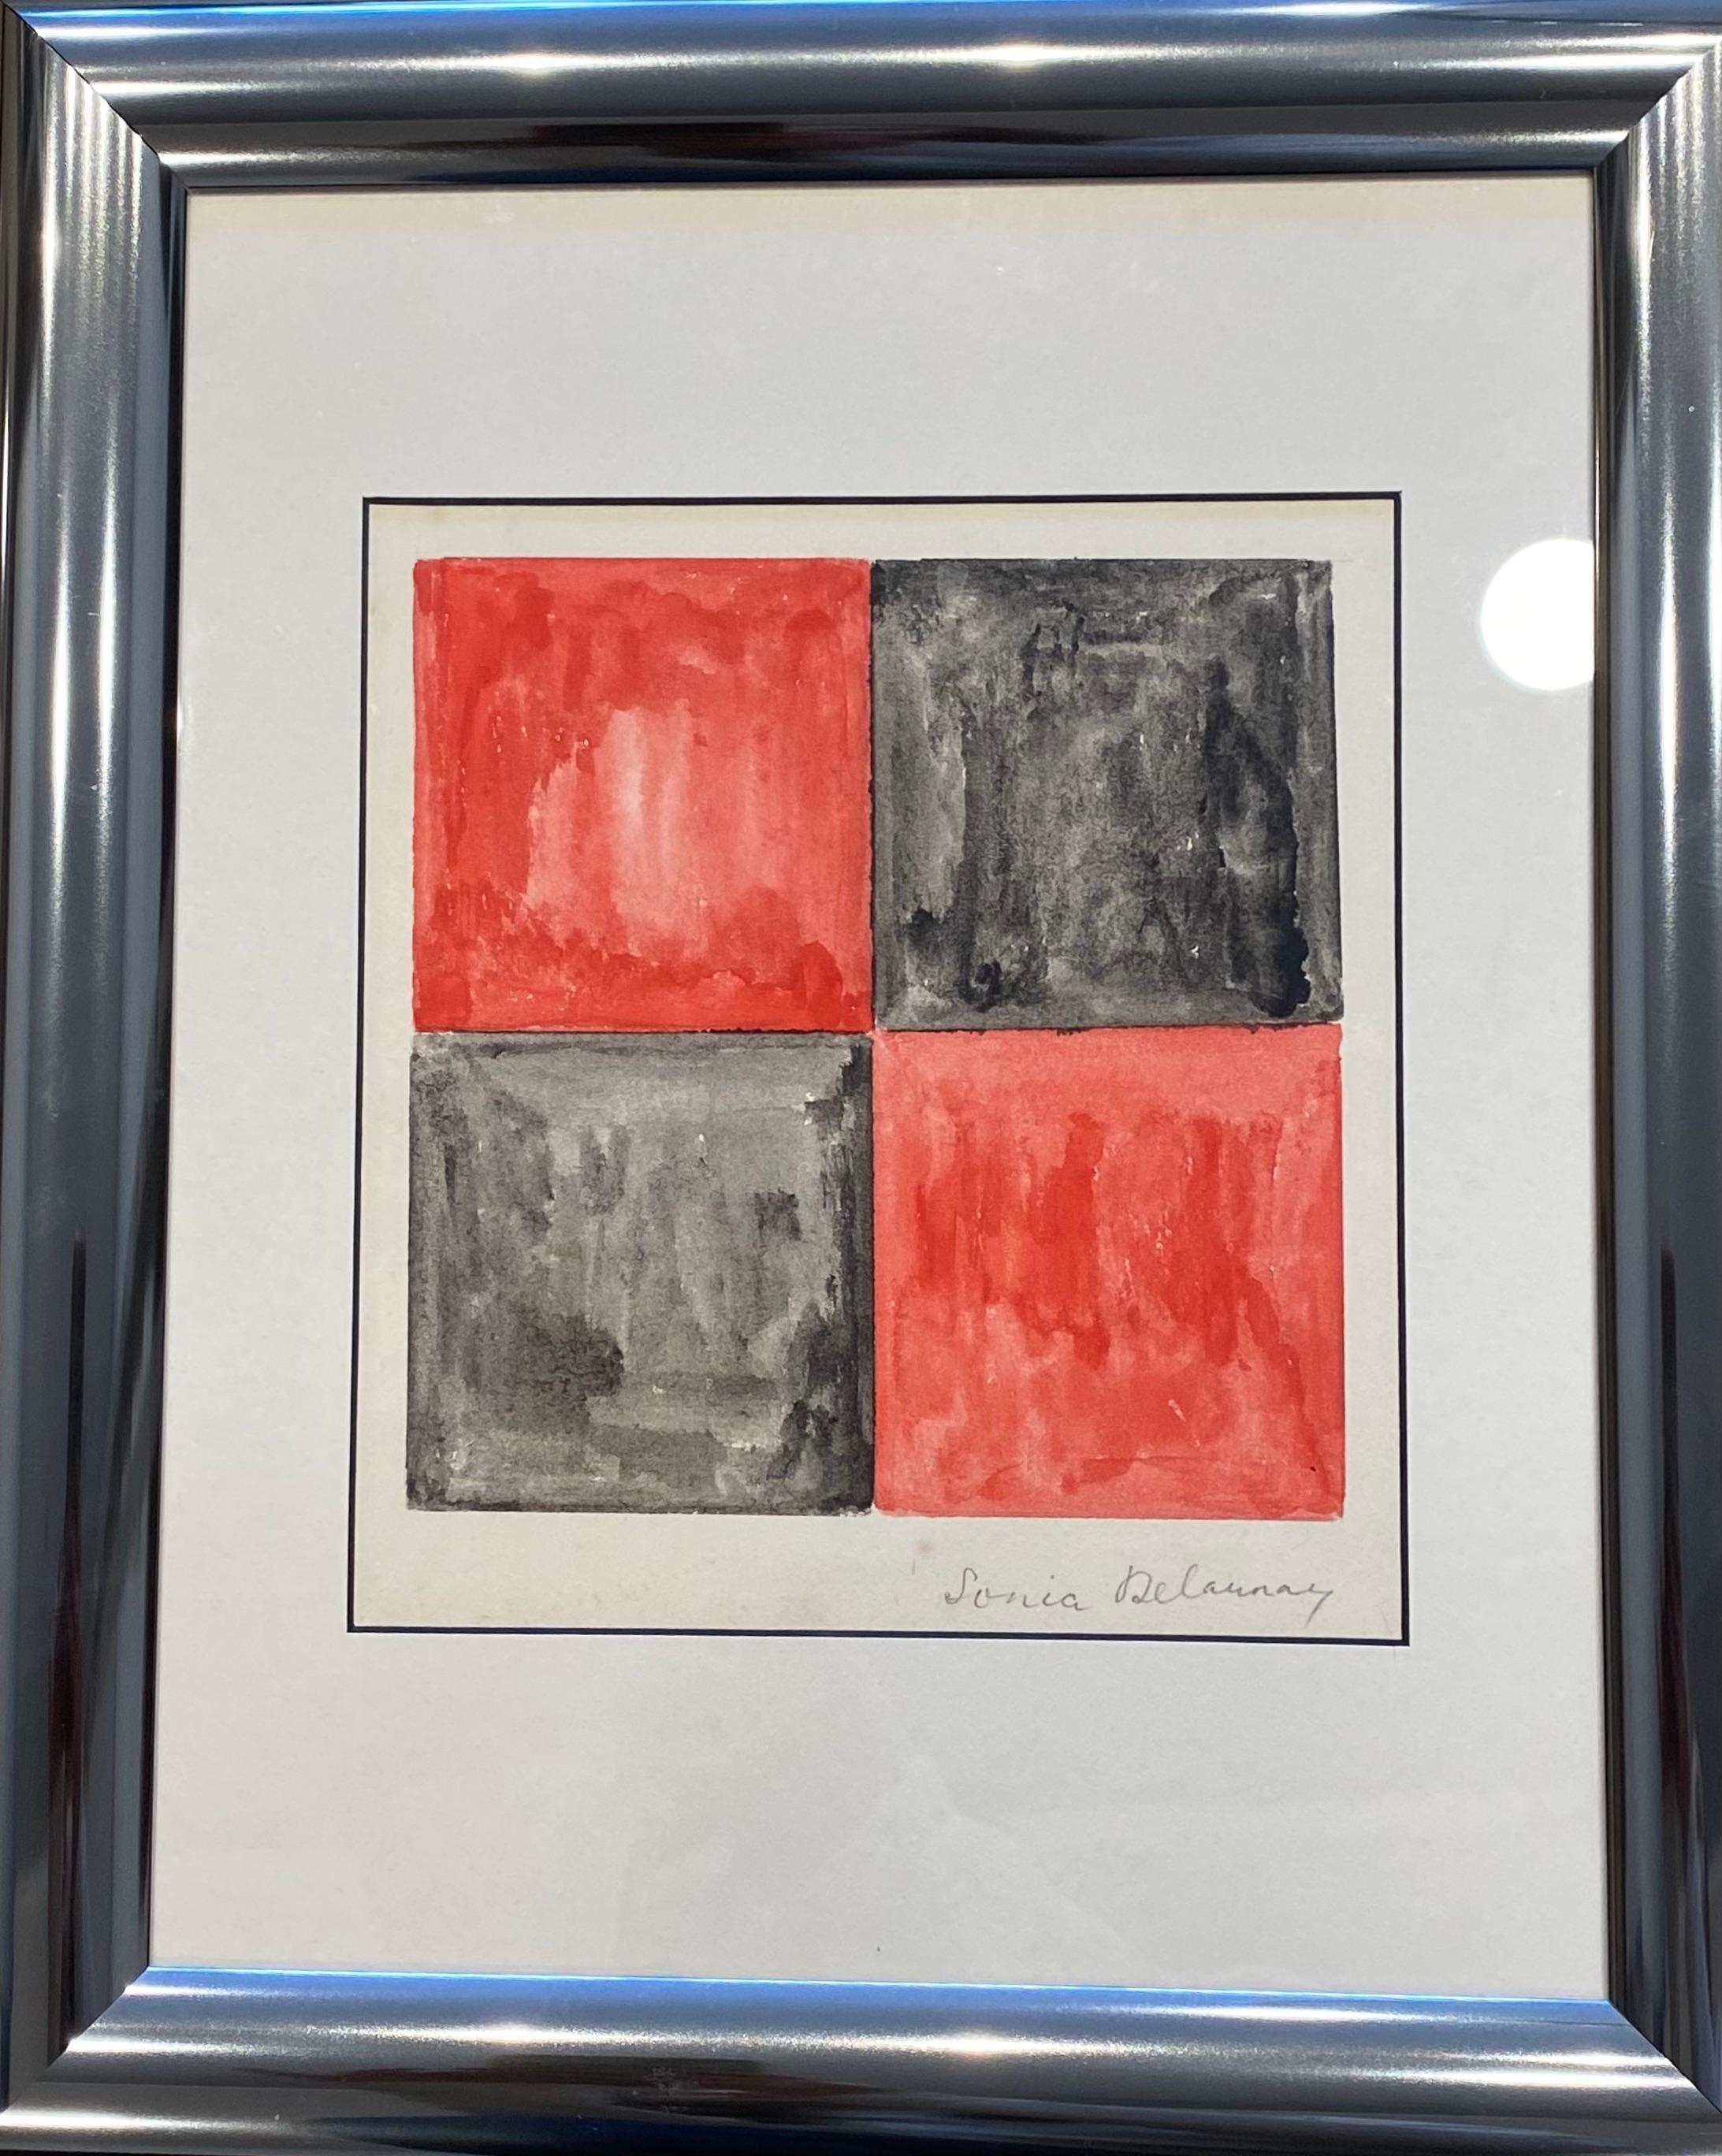 Rare peinture de Sonia Delaunay 
Gouache sur papier 
Avec cadre : 35 cm x 29 cm x 3 cm
Sans 17 cm x 17 cm
Excellent état 
1971
vendu avec un certificat d'authenticité 
Œuvre signée au crayon en bas à droite par l'artiste. 
Prix : 7900 € pour ce